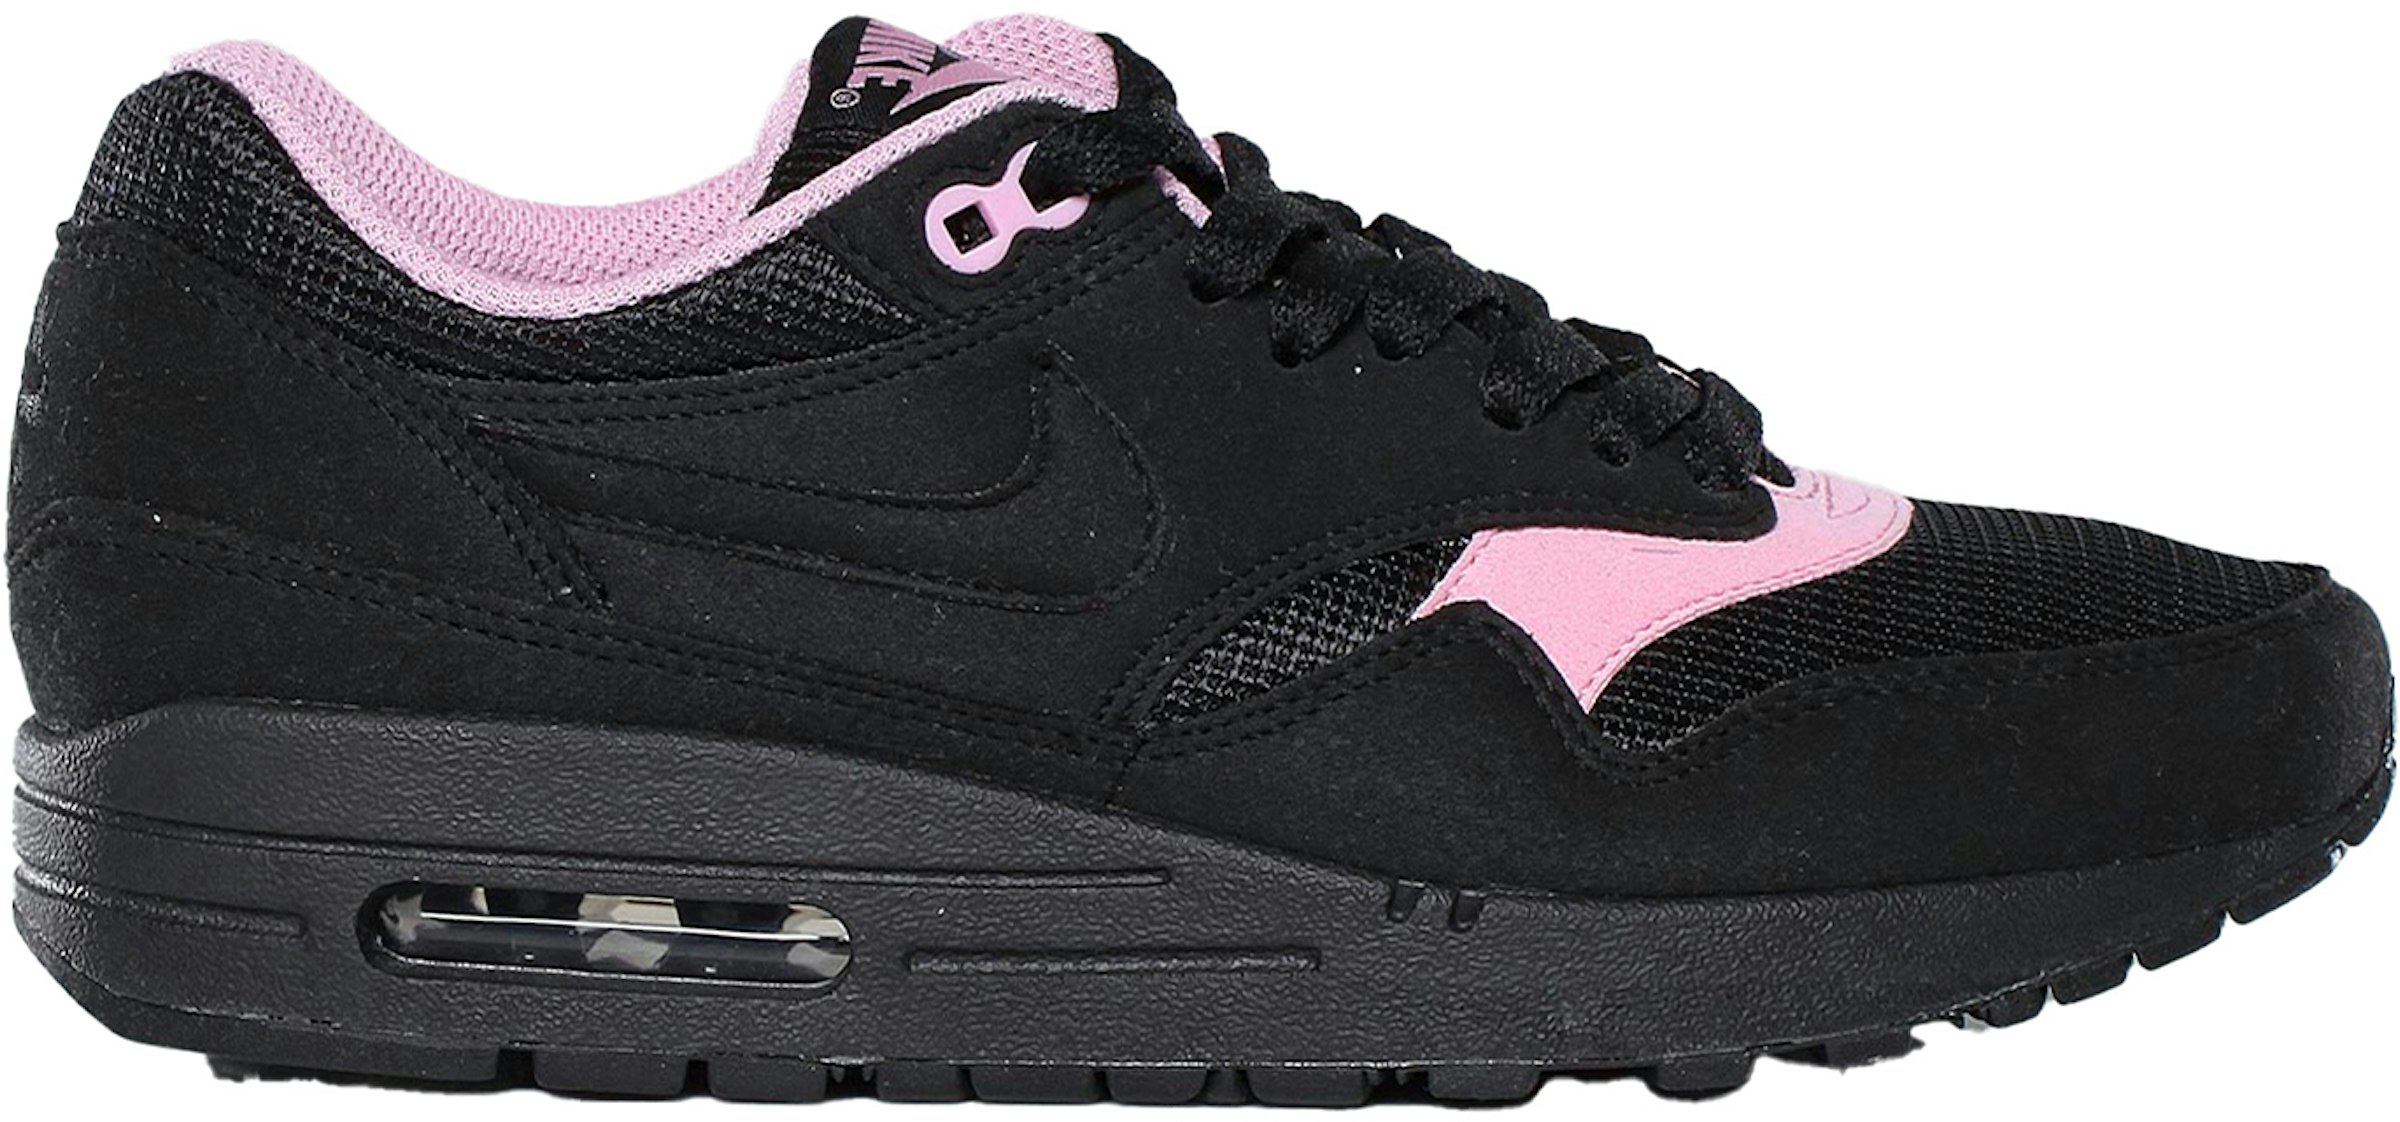 Nike Air Max 1 Black Perfect Pink - 319986-010 - US